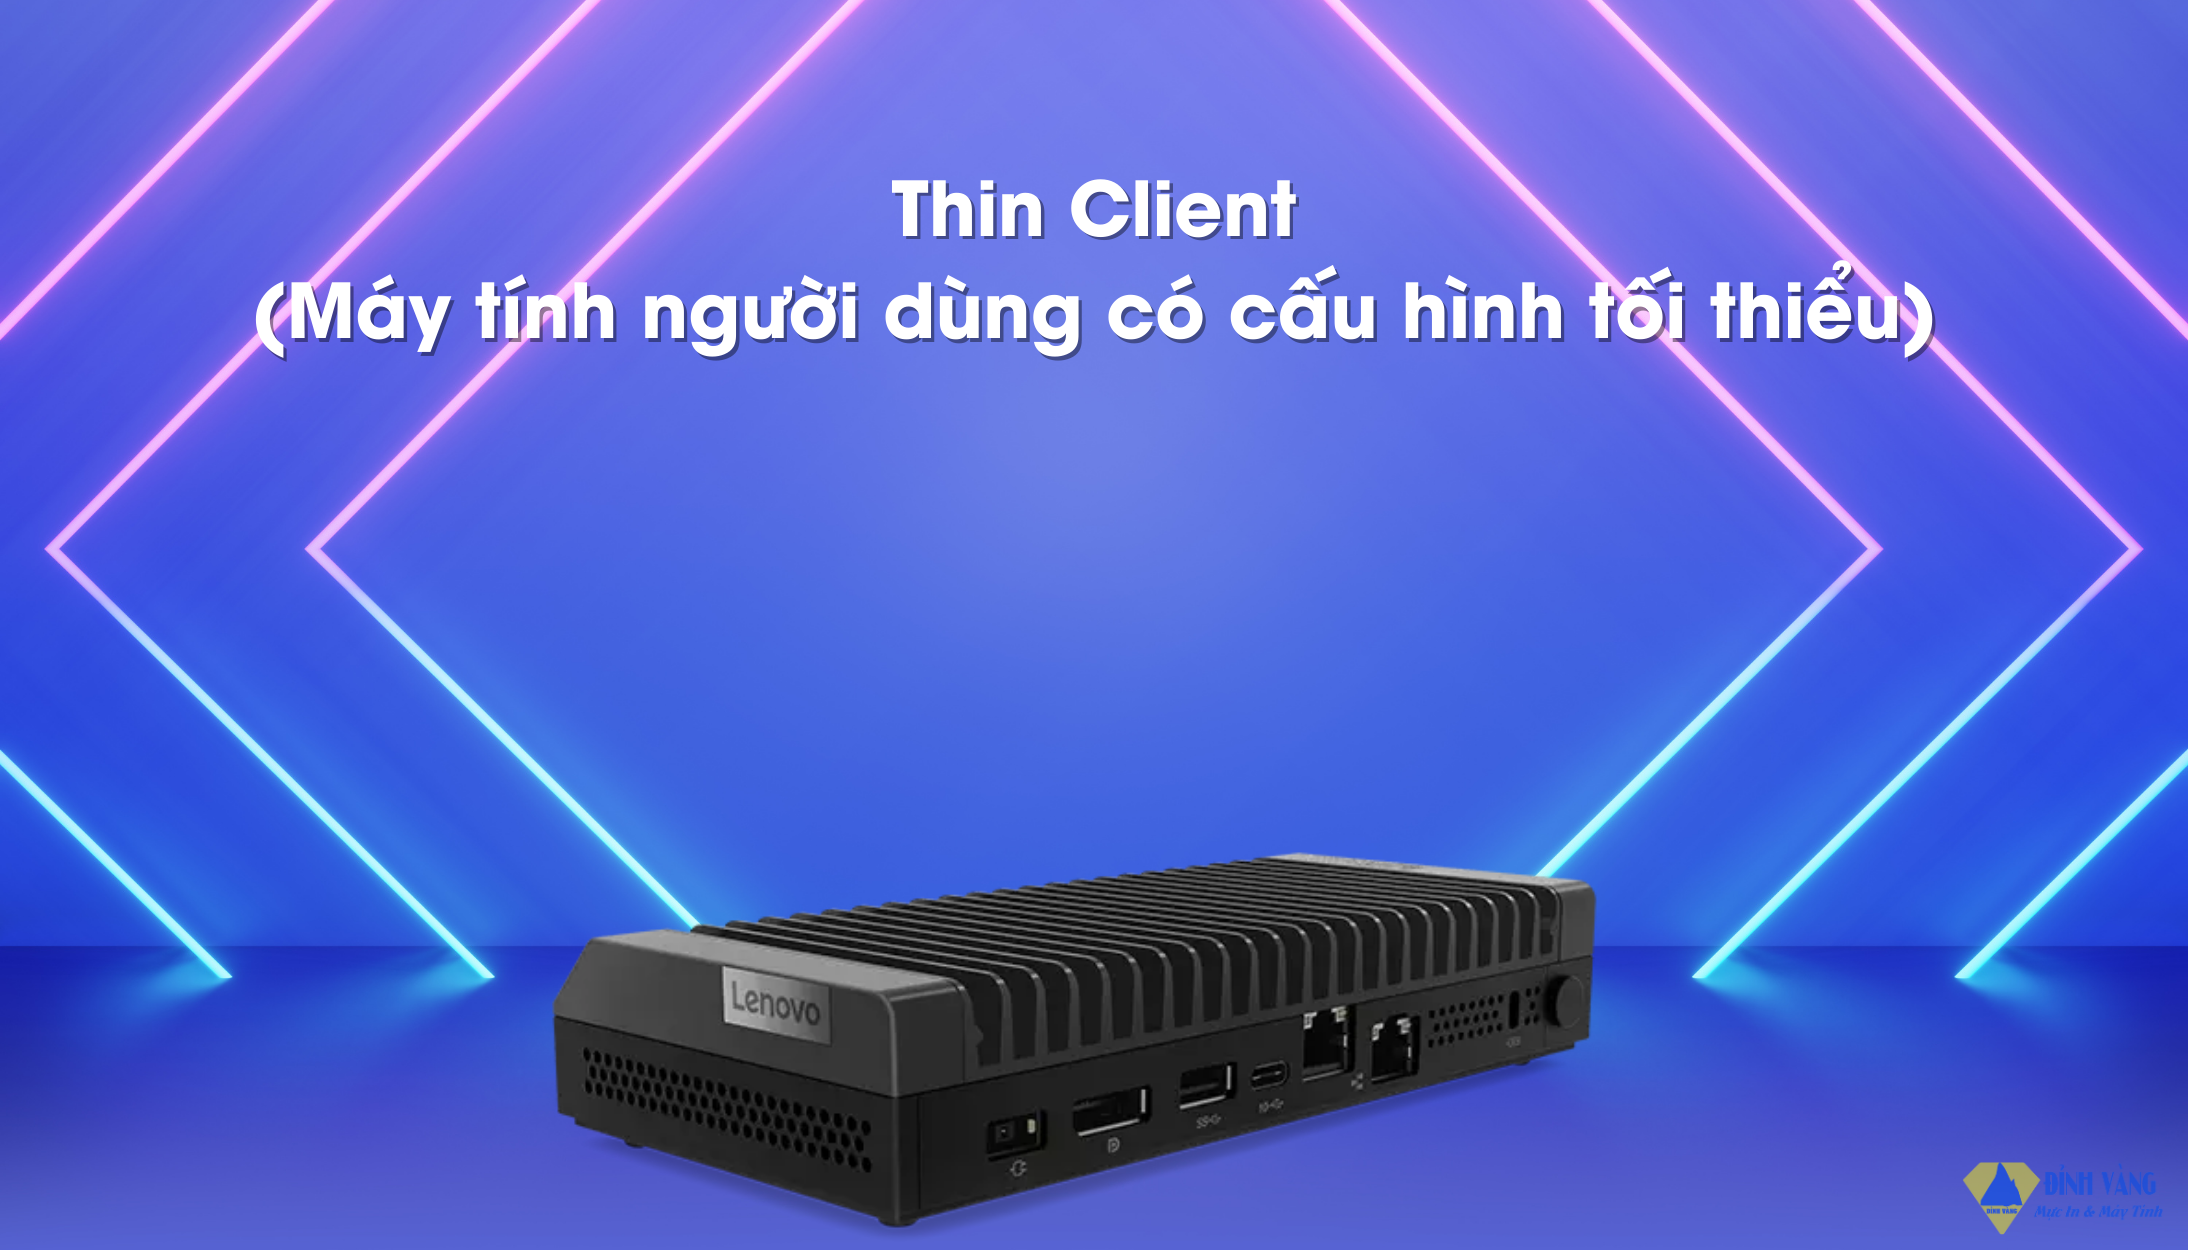 Thin Client (Máy tính người dùng có cấu hình tối thiểu).